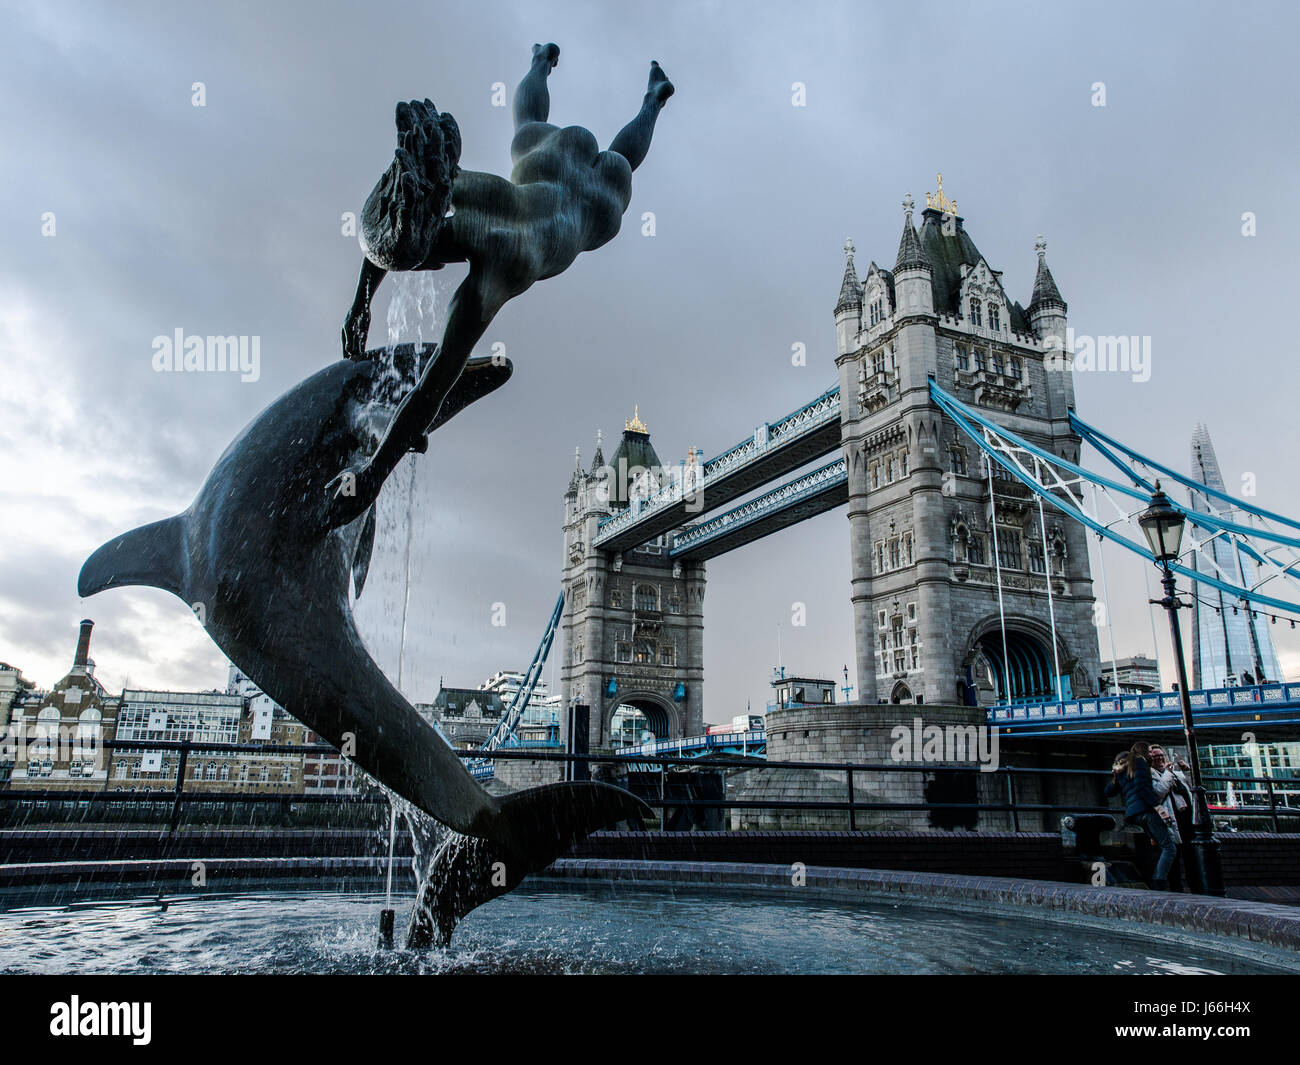 Londra, Inghilterra - Dicembre 08, 2015: una fontana con un delfino, in un giorno nuvoloso con gli storici il Tower Bridge di Londra in background Foto Stock